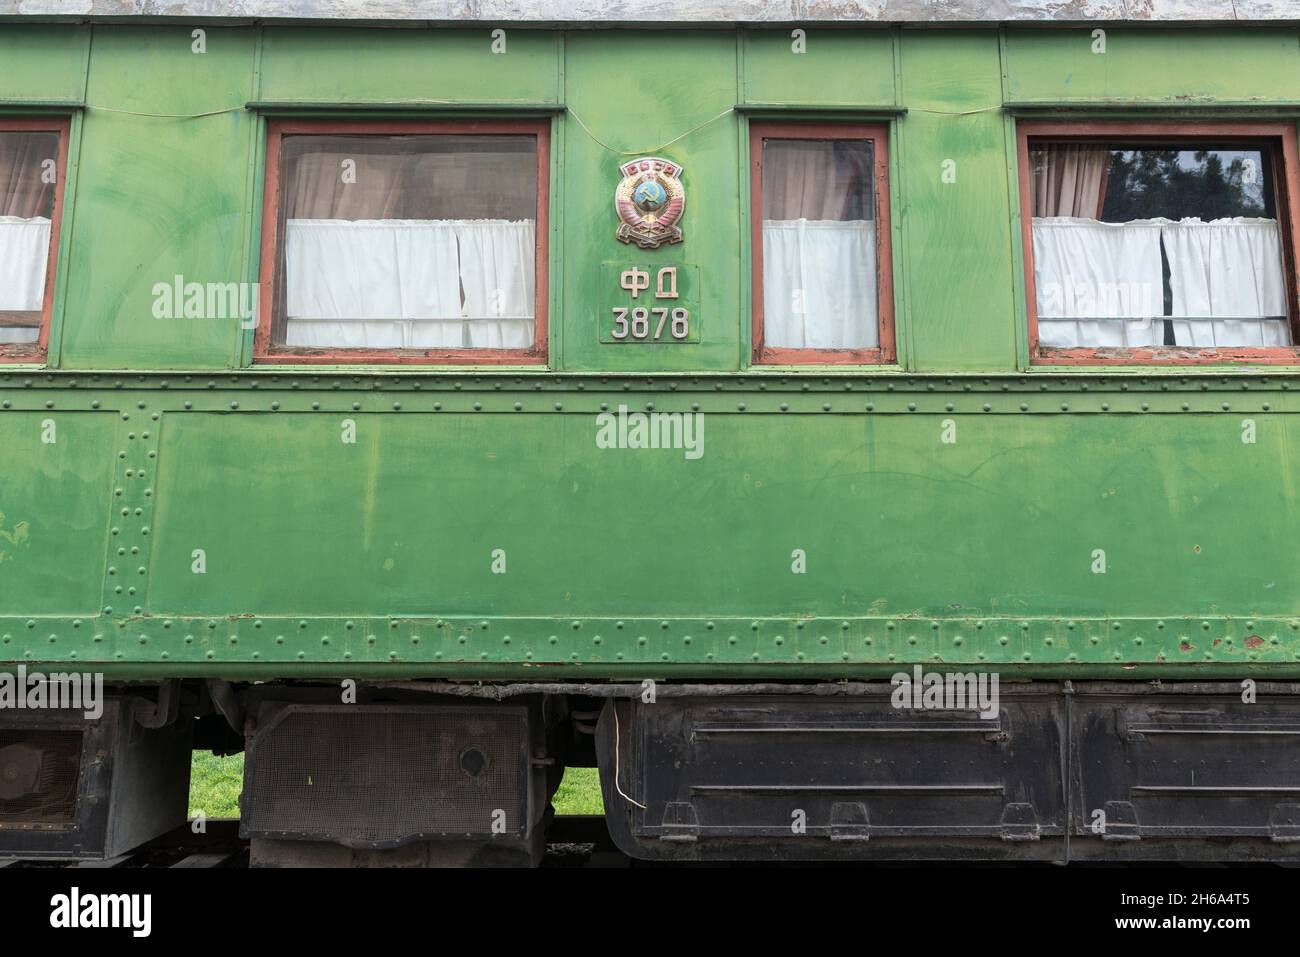 La voiture de chemin de fer personnelle de Staline, située à l'extérieur du musée Joseh Staline dans son lieu de naissance Gori, Shida Kartli, Géorgie, Caucase Banque D'Images